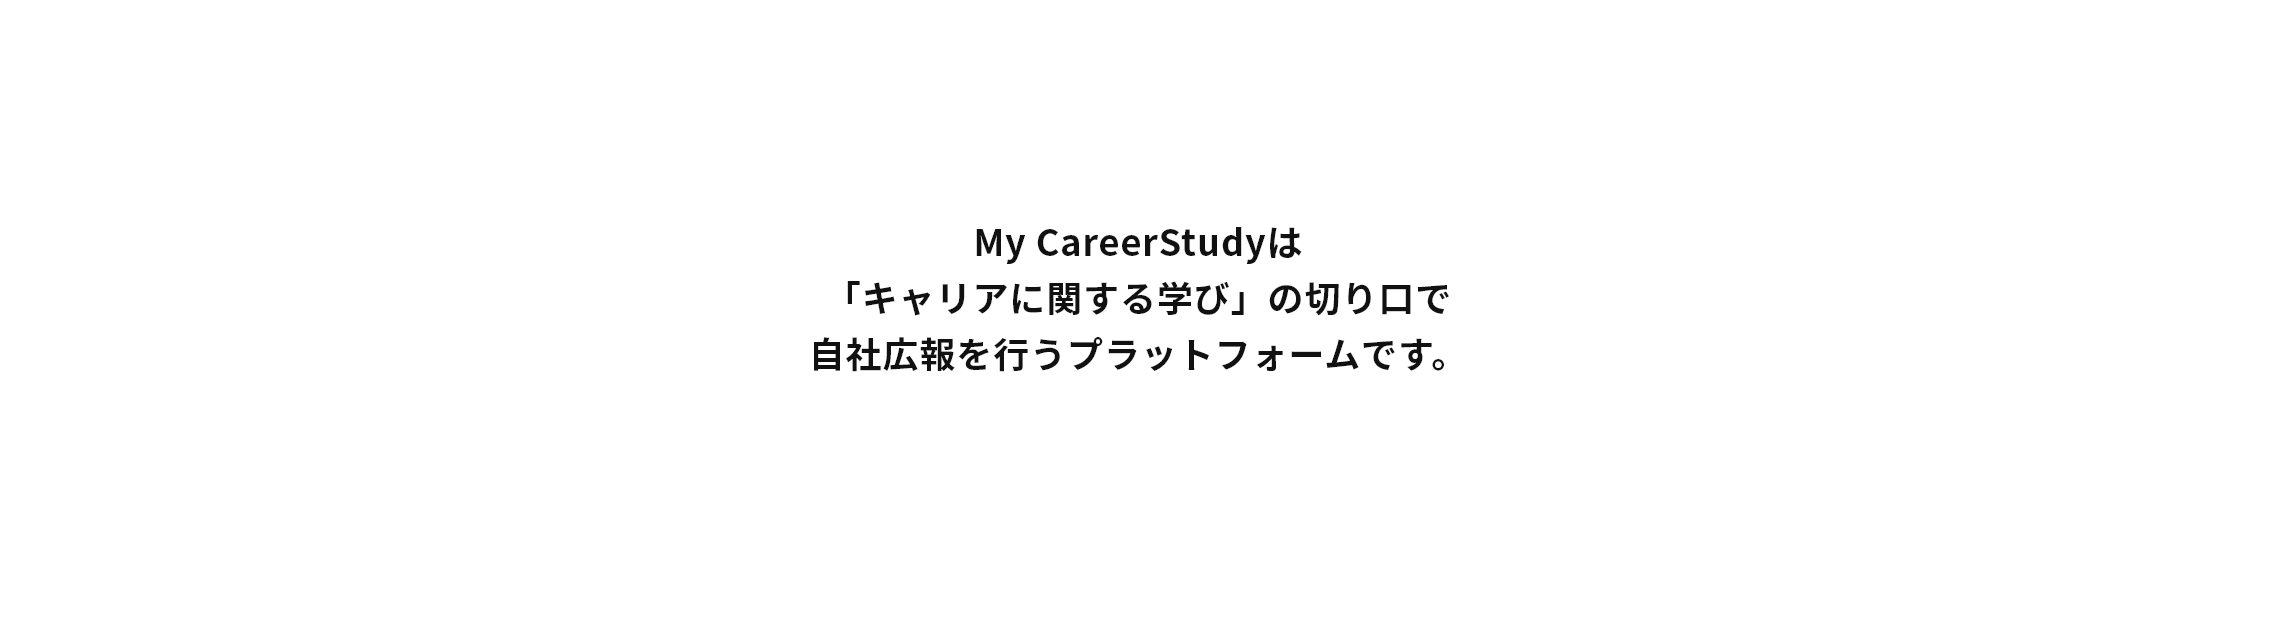 My CareerStudyは「キャリアに関する学び」の切り口で自社広報を行うプラットフォームです。